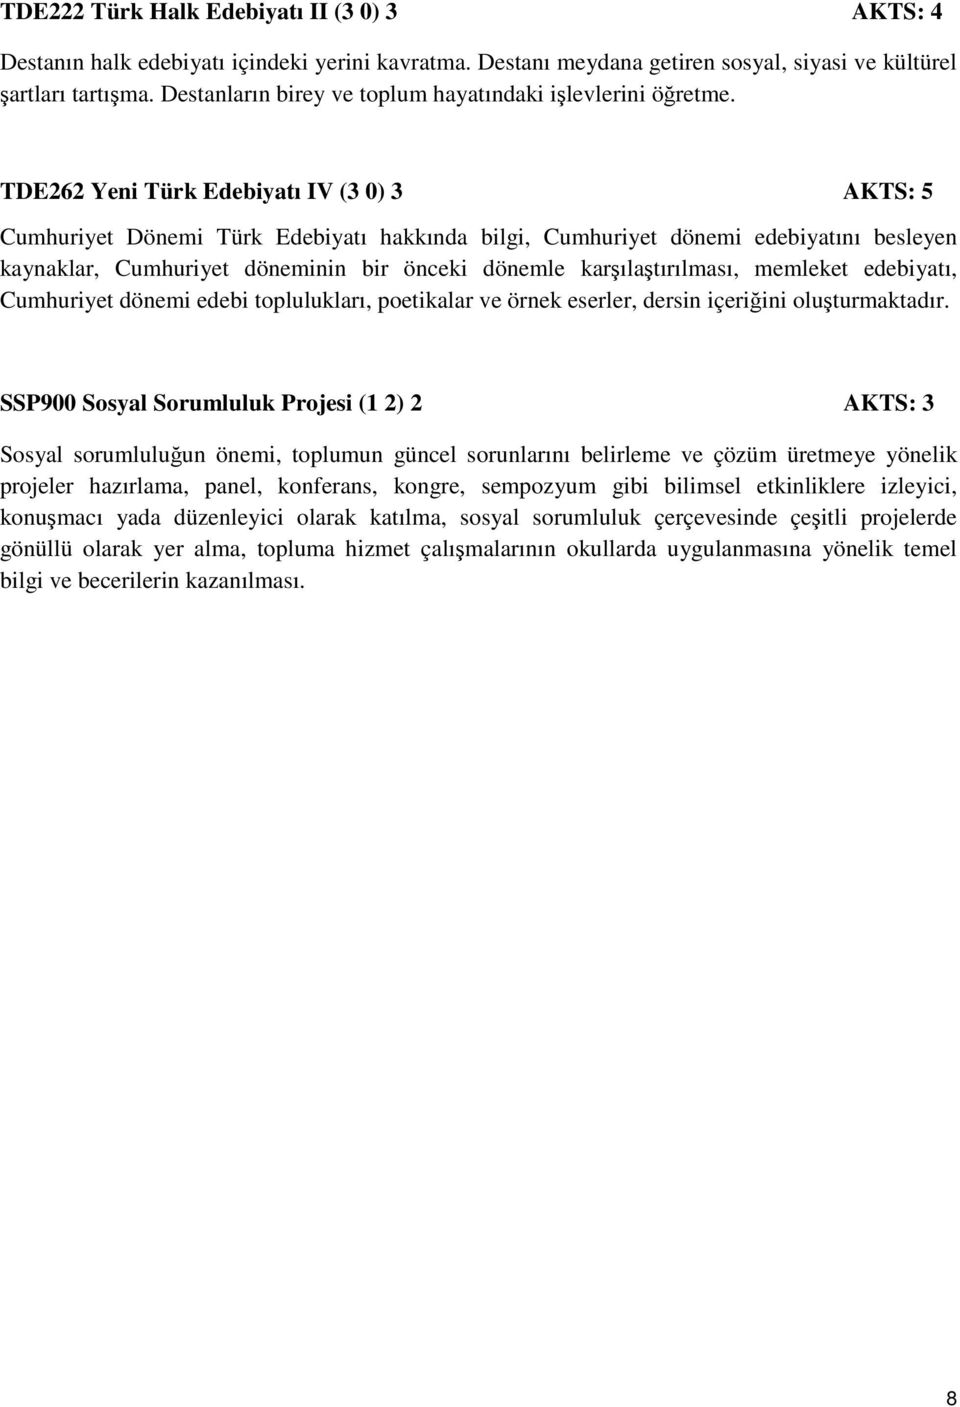 TDE262 Yeni Türk Edebiyatı IV (3 0) 3 AKTS: 5 Cumhuriyet Dönemi Türk Edebiyatı hakkında bilgi, Cumhuriyet dönemi edebiyatını besleyen kaynaklar, Cumhuriyet döneminin bir önceki dönemle